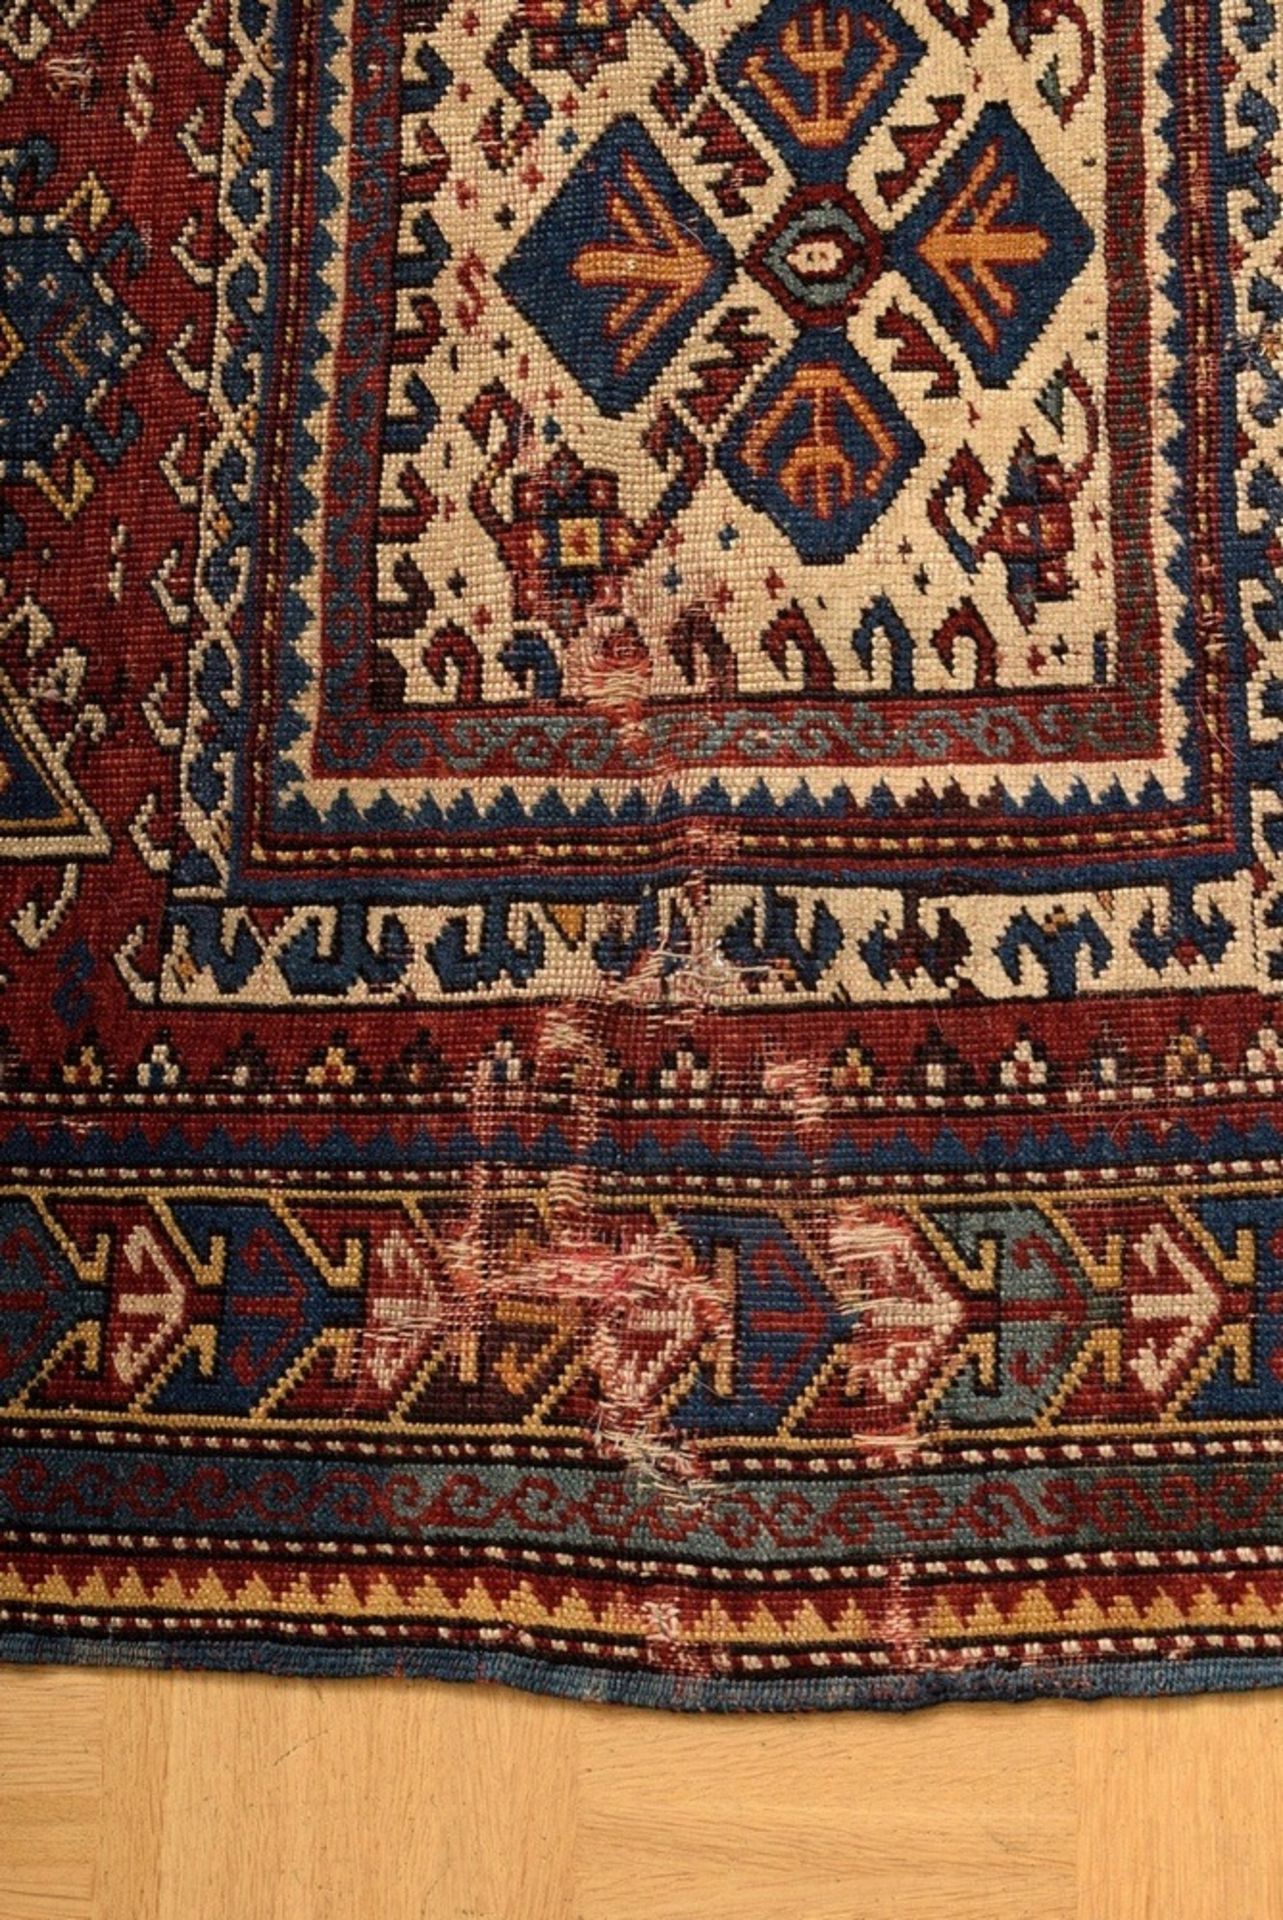 Fachralo Kazak Nischen- oder Gebetsteppich mit w | Fachralo Kazak niche or prayer rug with a white - Bild 3 aus 7